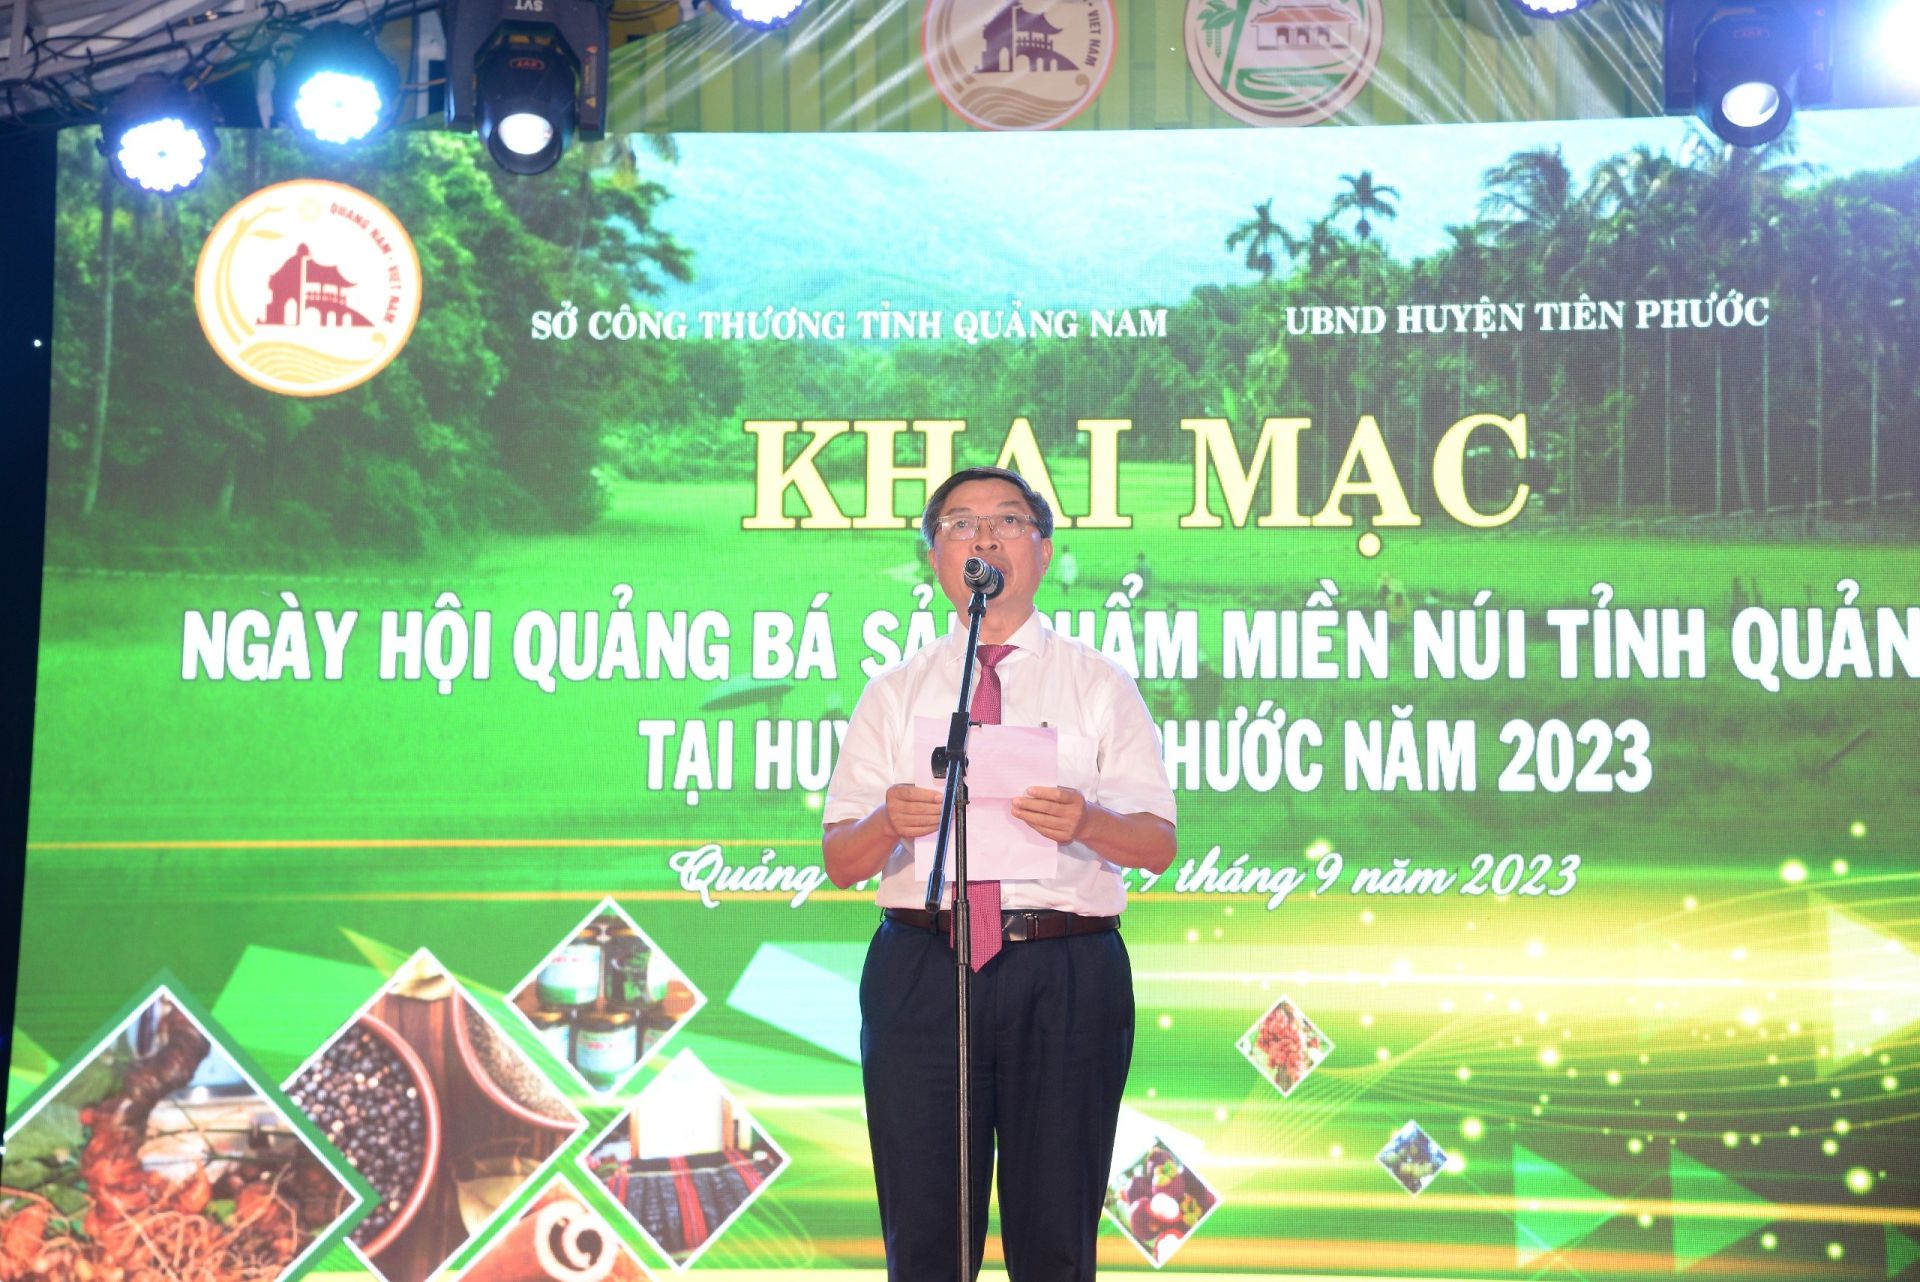 Ông Hường Văn Minh; Phó giám đốc Sở công thương tỉnh Quảng Nam phát biểu tại lễ khai mạc